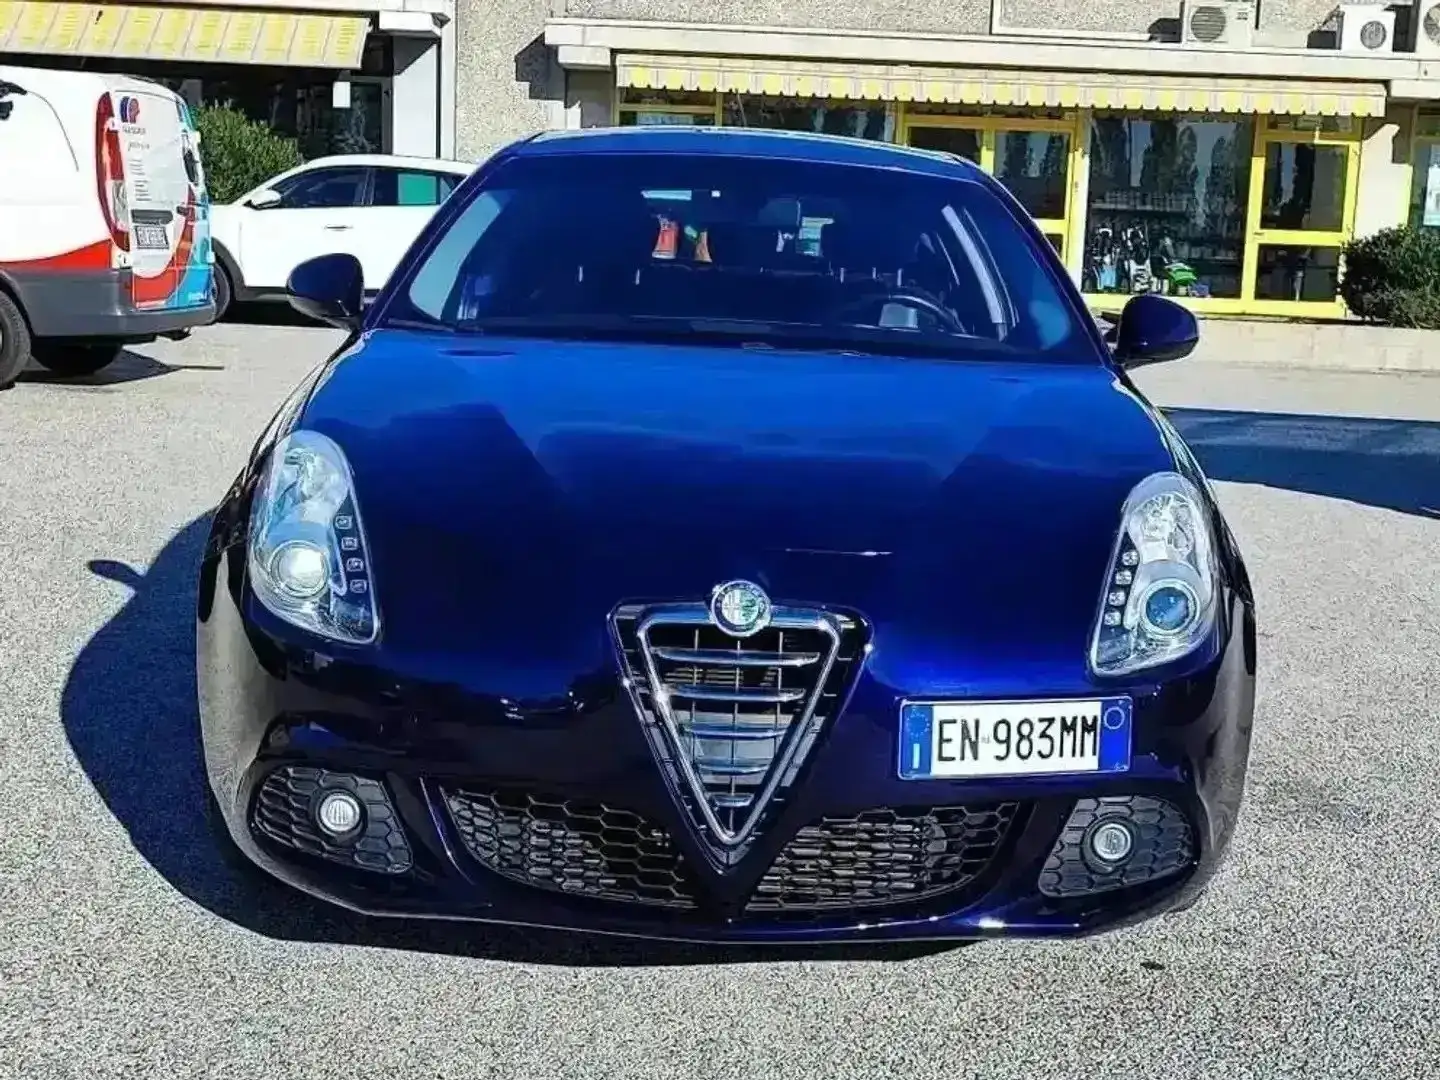 Alfa Romeo Giulietta 2.0 JTDm-2 170 CV TCT Exclusive - EN983MM Blu/Azzurro - 2